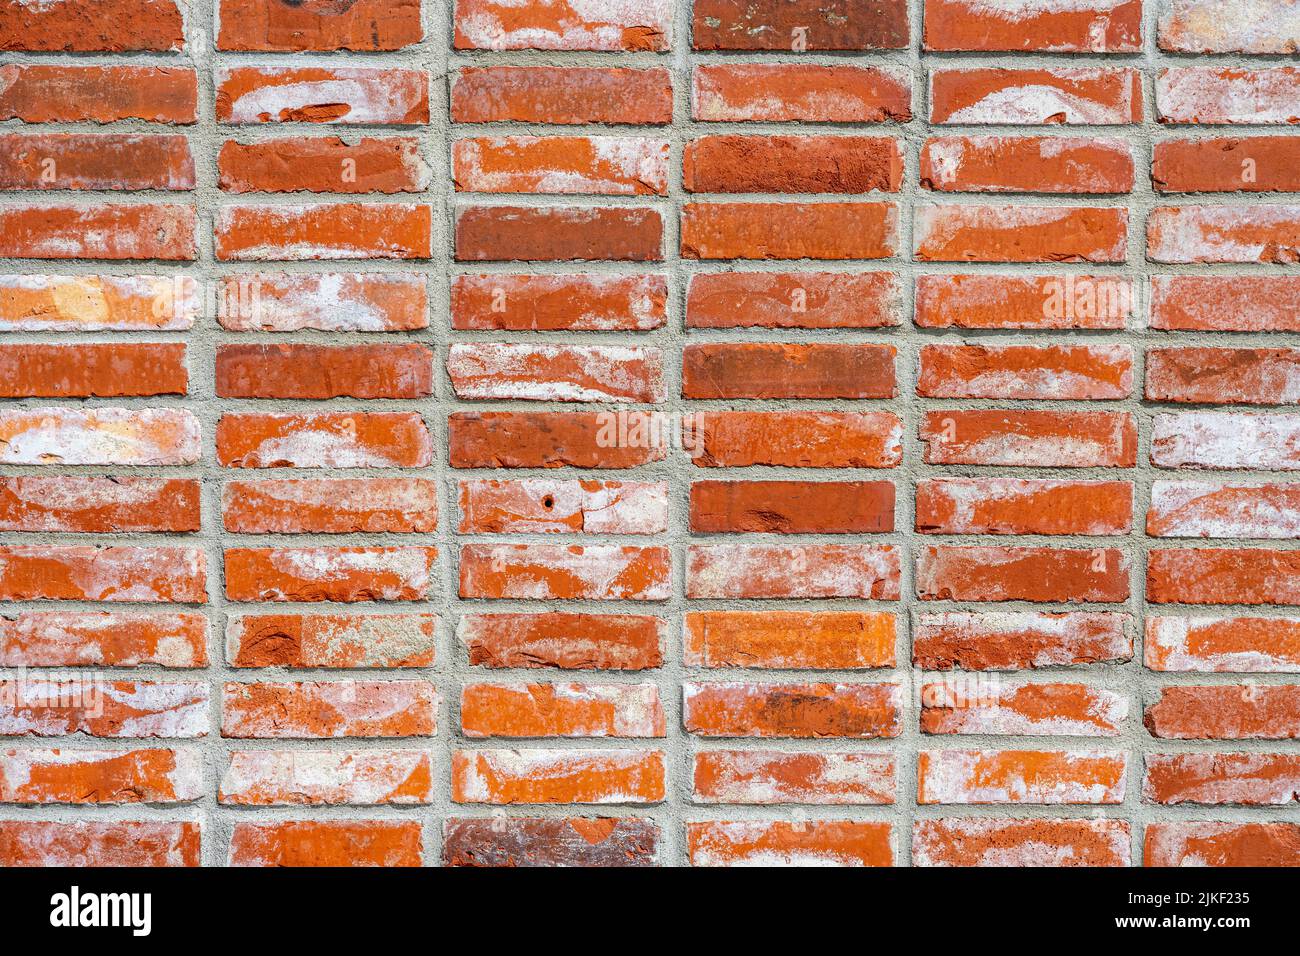 Fondo de una pared hecha de ladrillos de clinker rojos Foto de stock